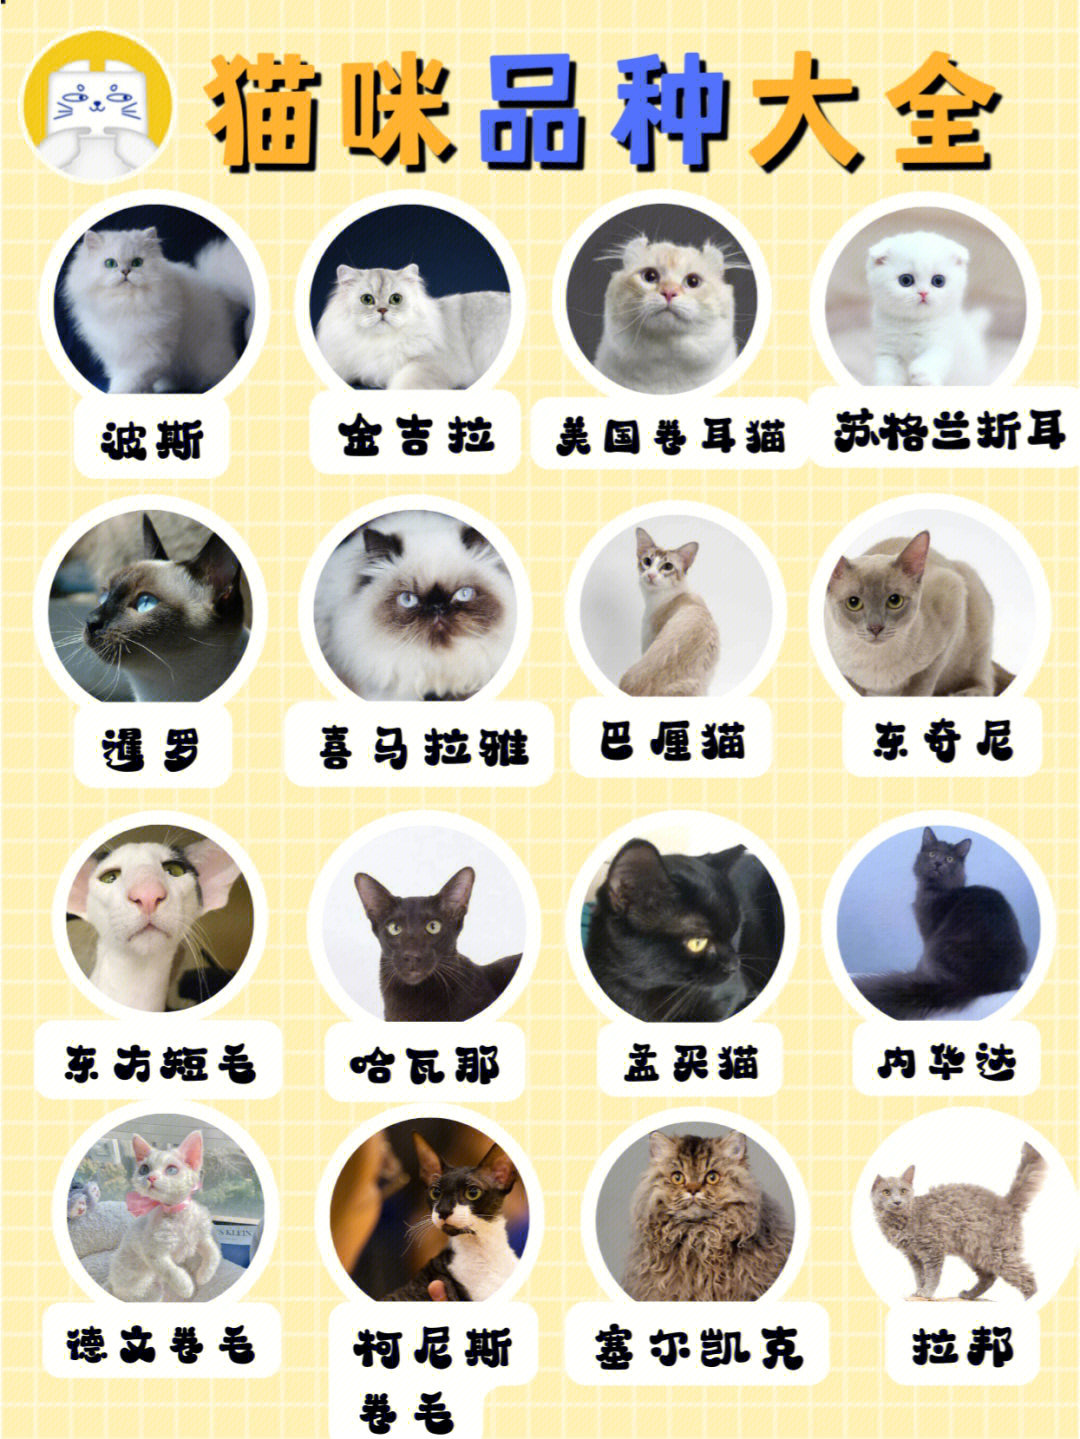 各种猫名字及图片图片